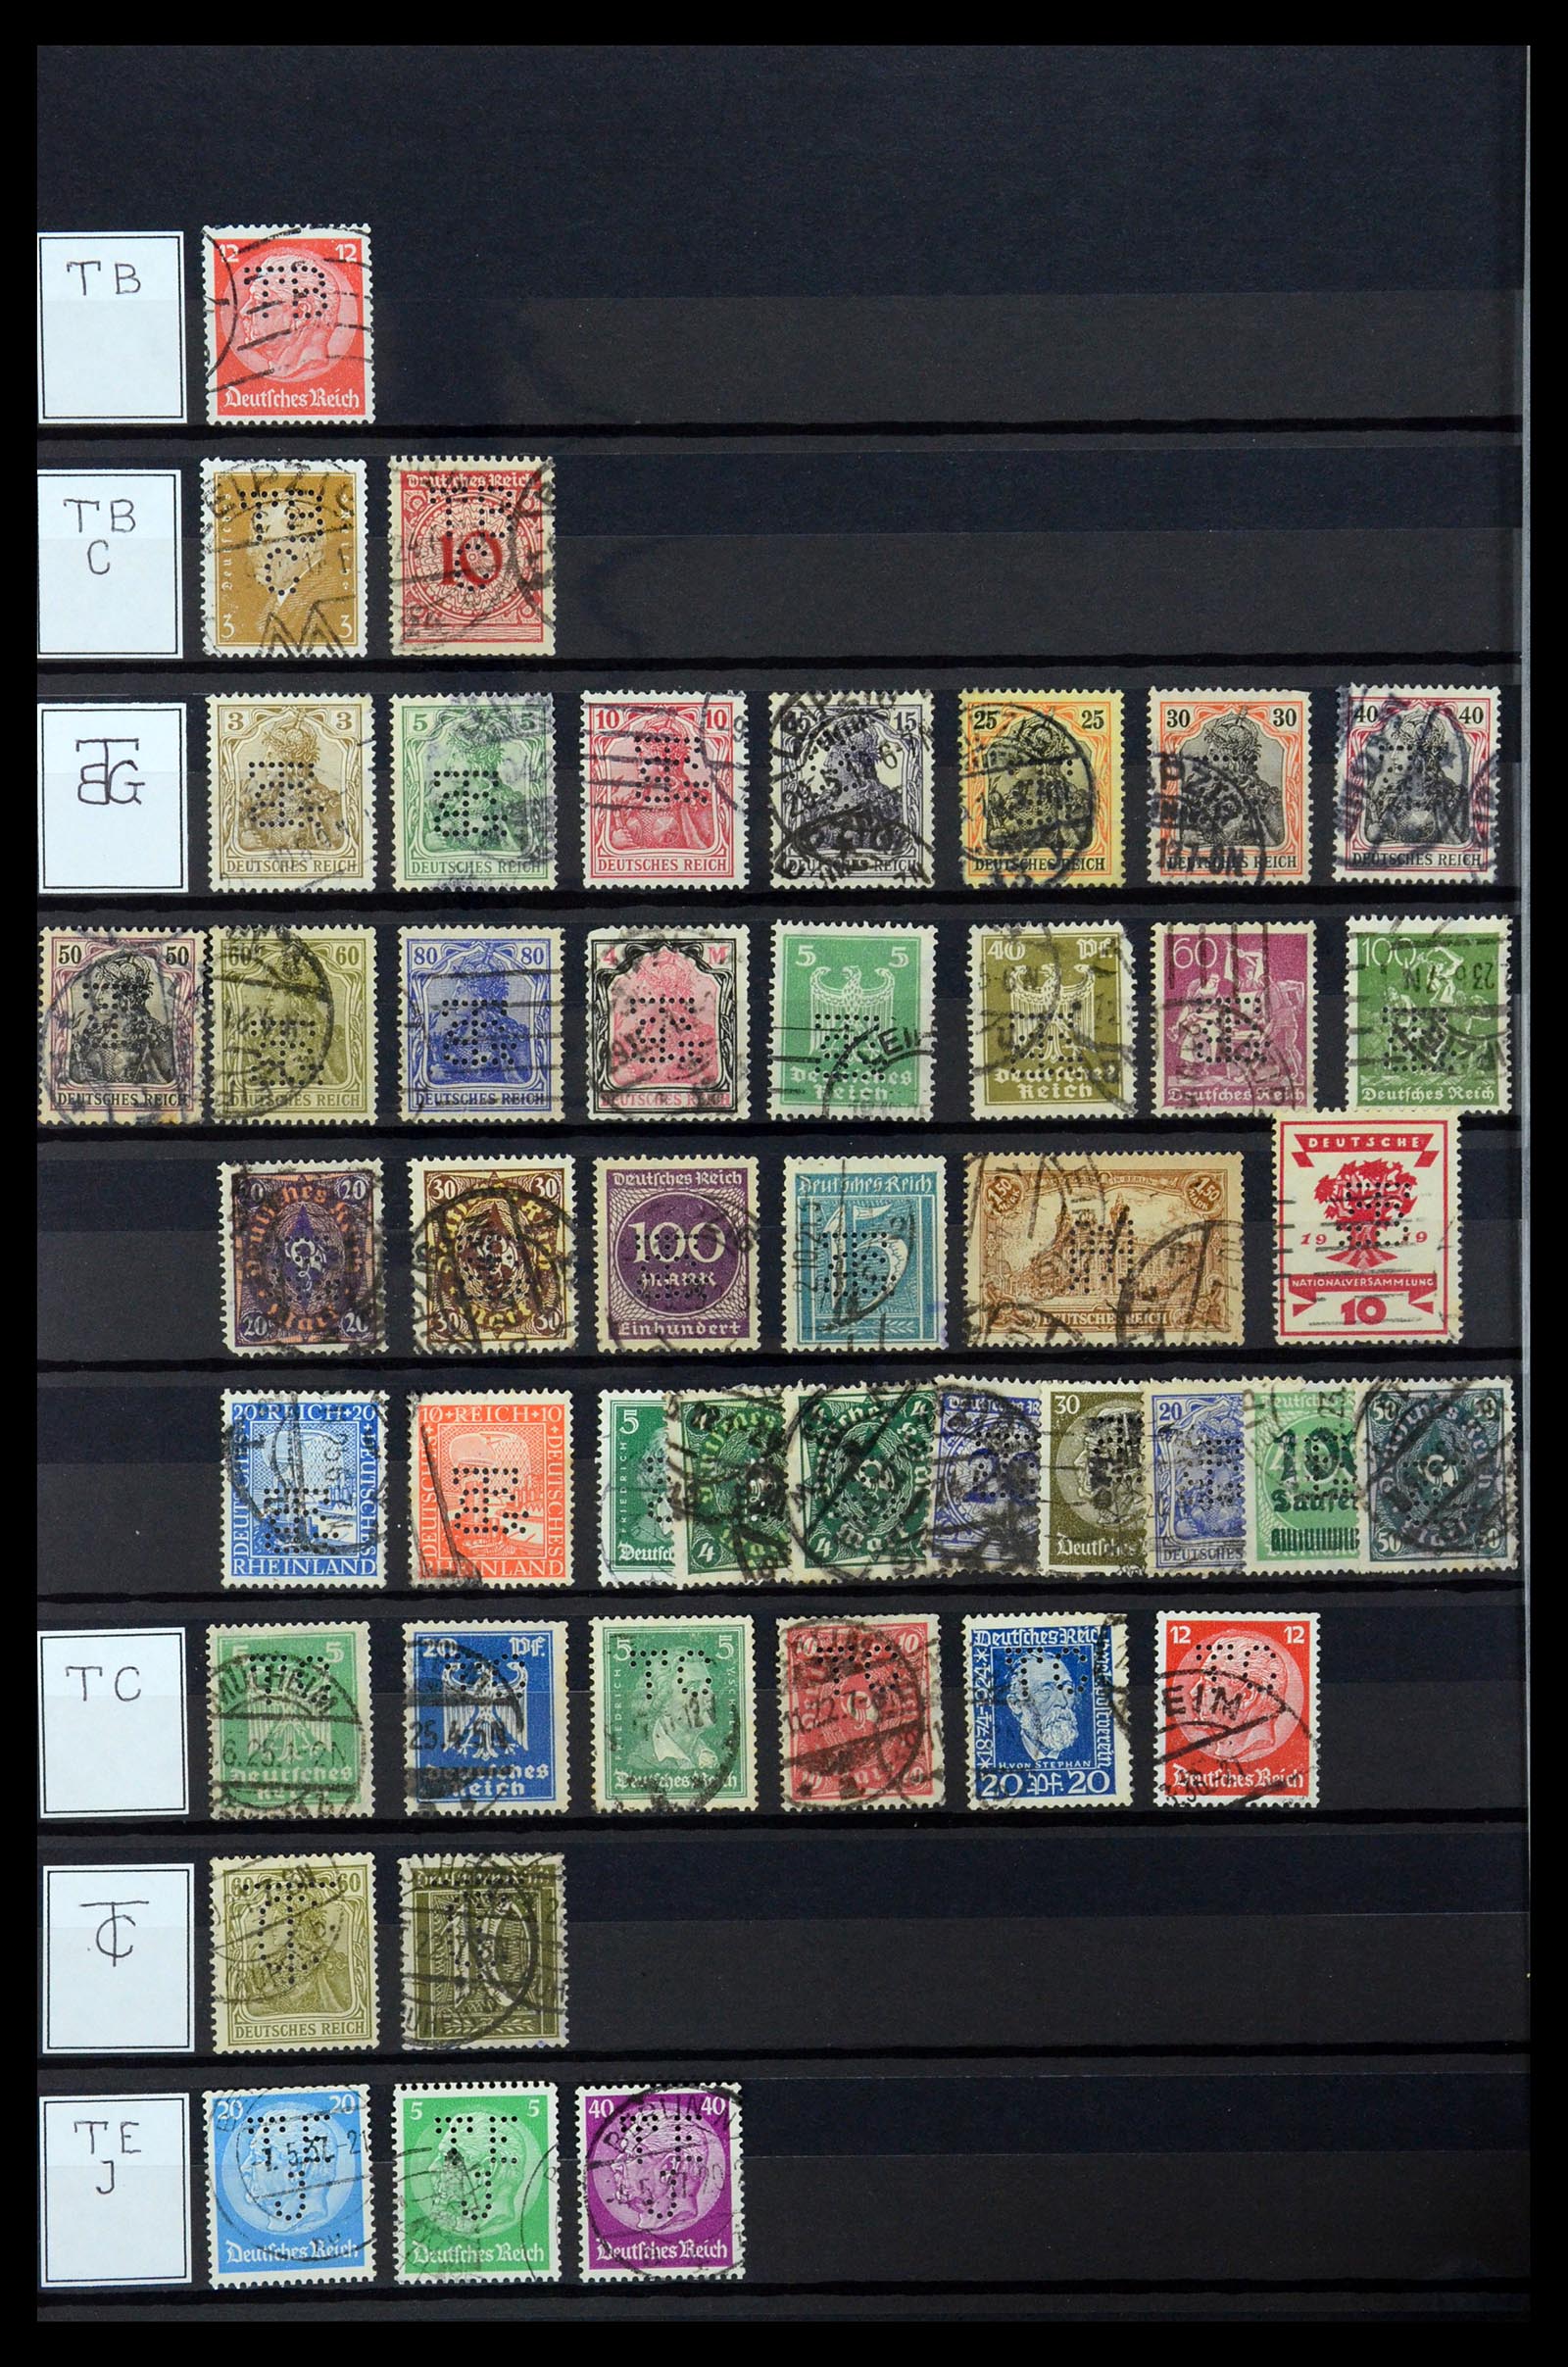 36405 311 - Stamp collection 36405 German Reich perfins 1880-1945.